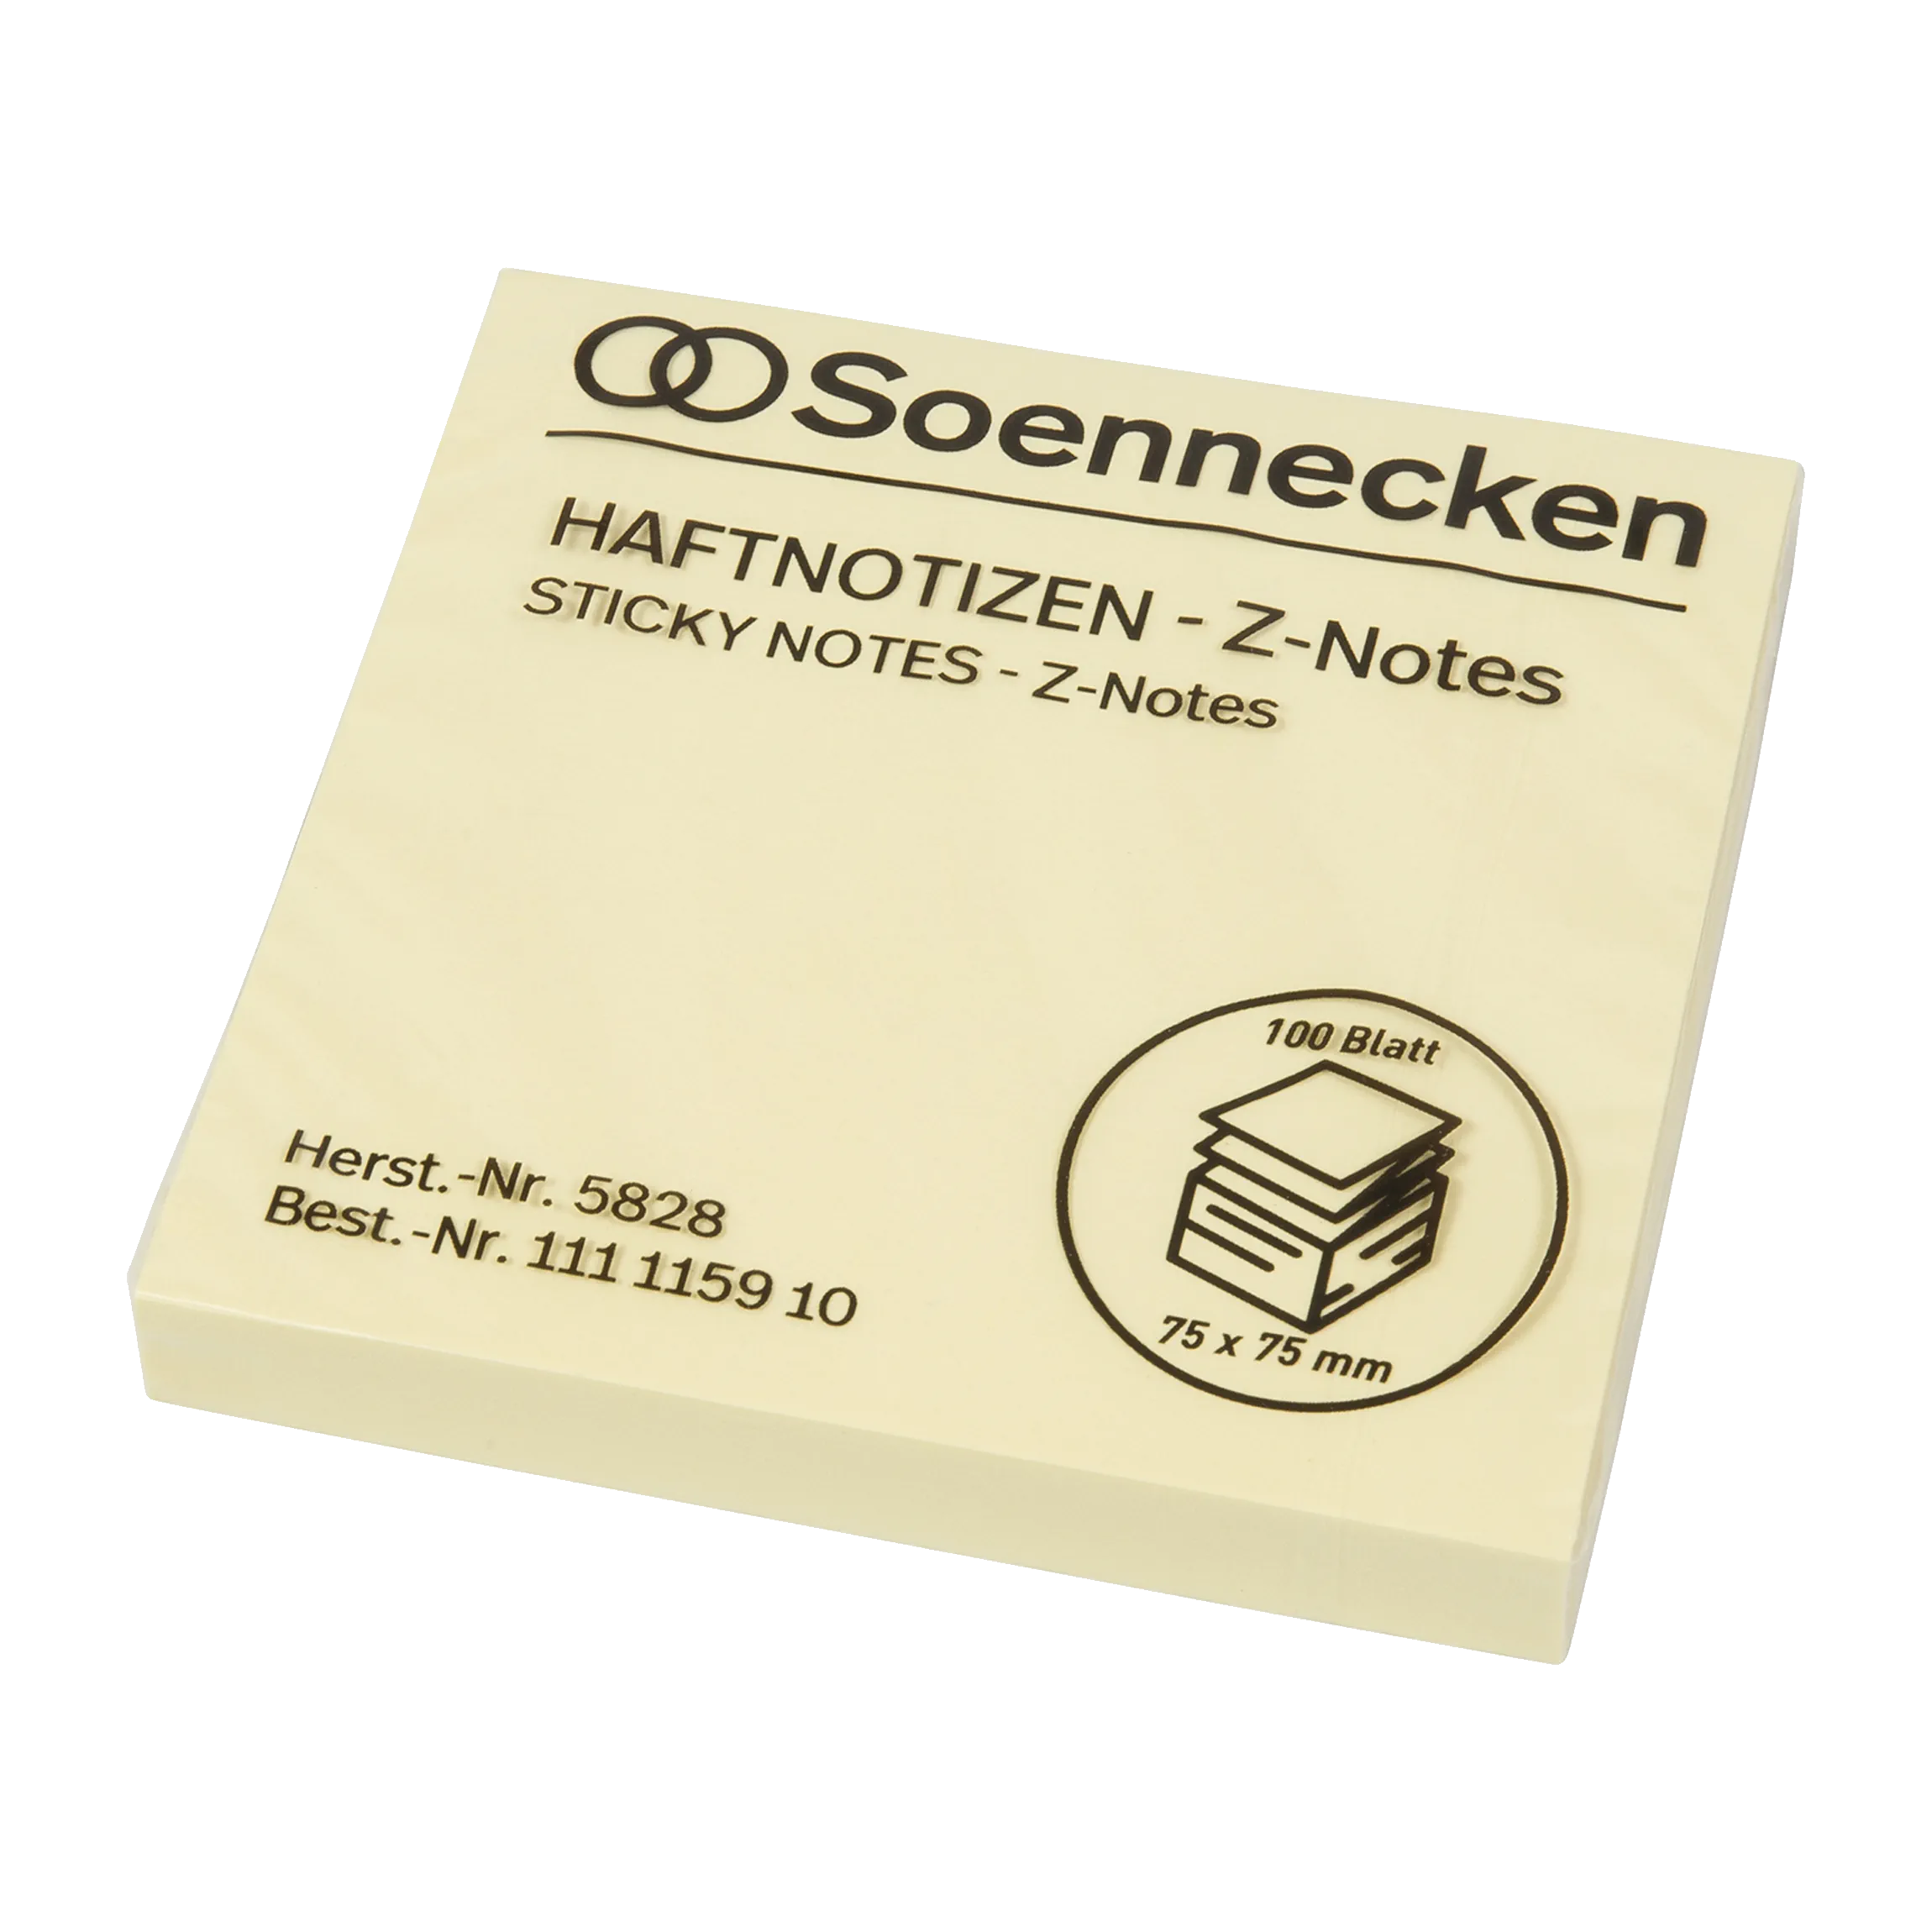 SOENNECKEN Haftnotiz Z-Notes gelb  75 x 75 mm 100 Blatt 